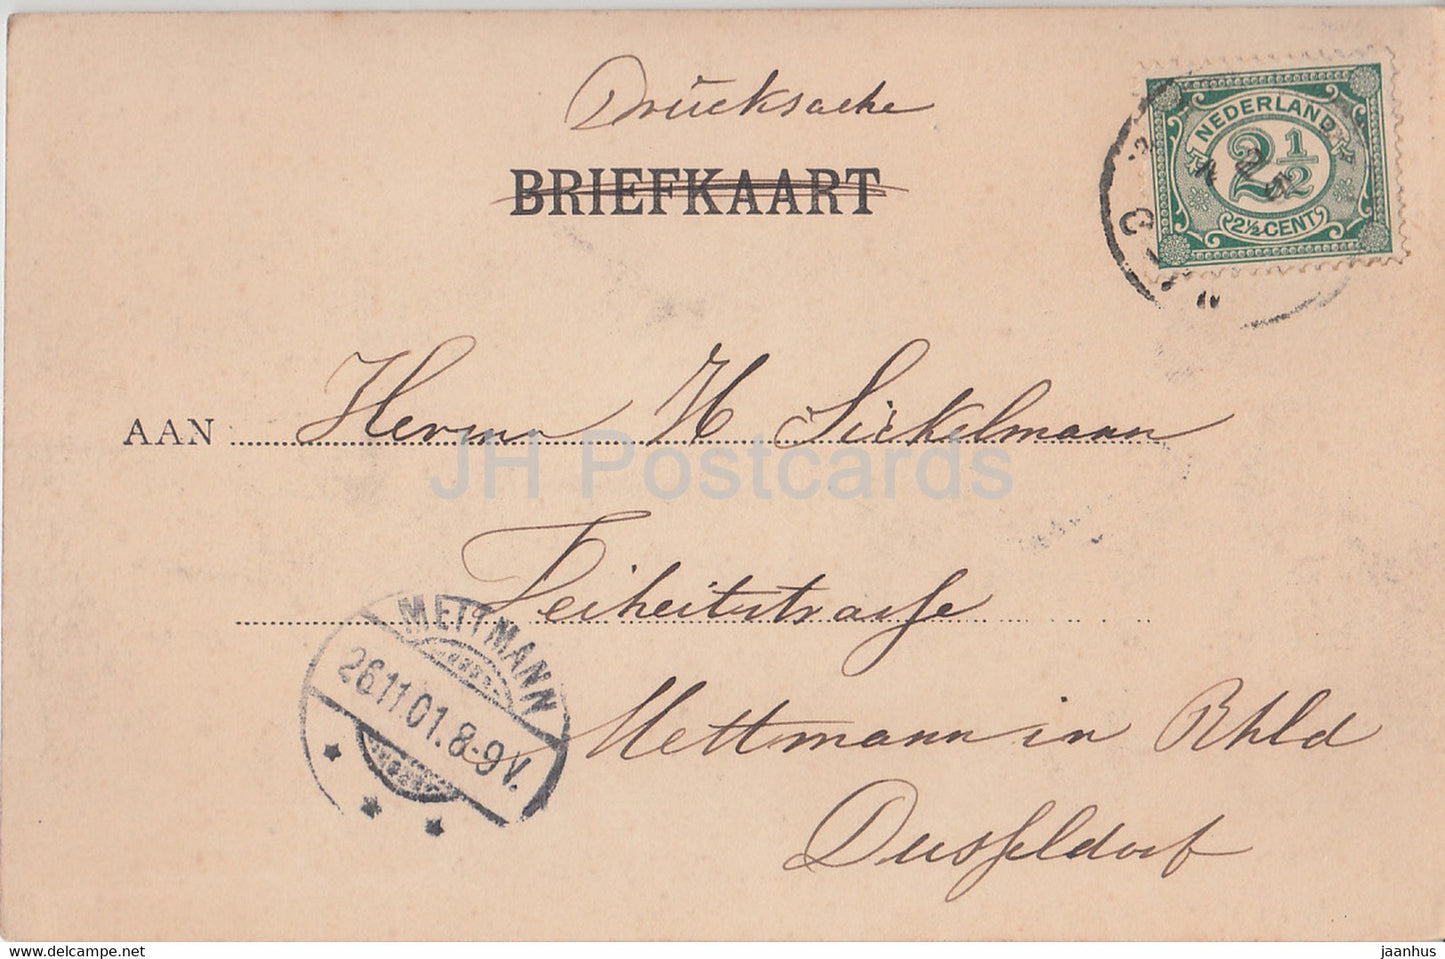 Hijacinthenvelder de Haarlem - champ de fleurs de jacinthes - carte postale ancienne - 1901 - Pays-Bas - utilisé